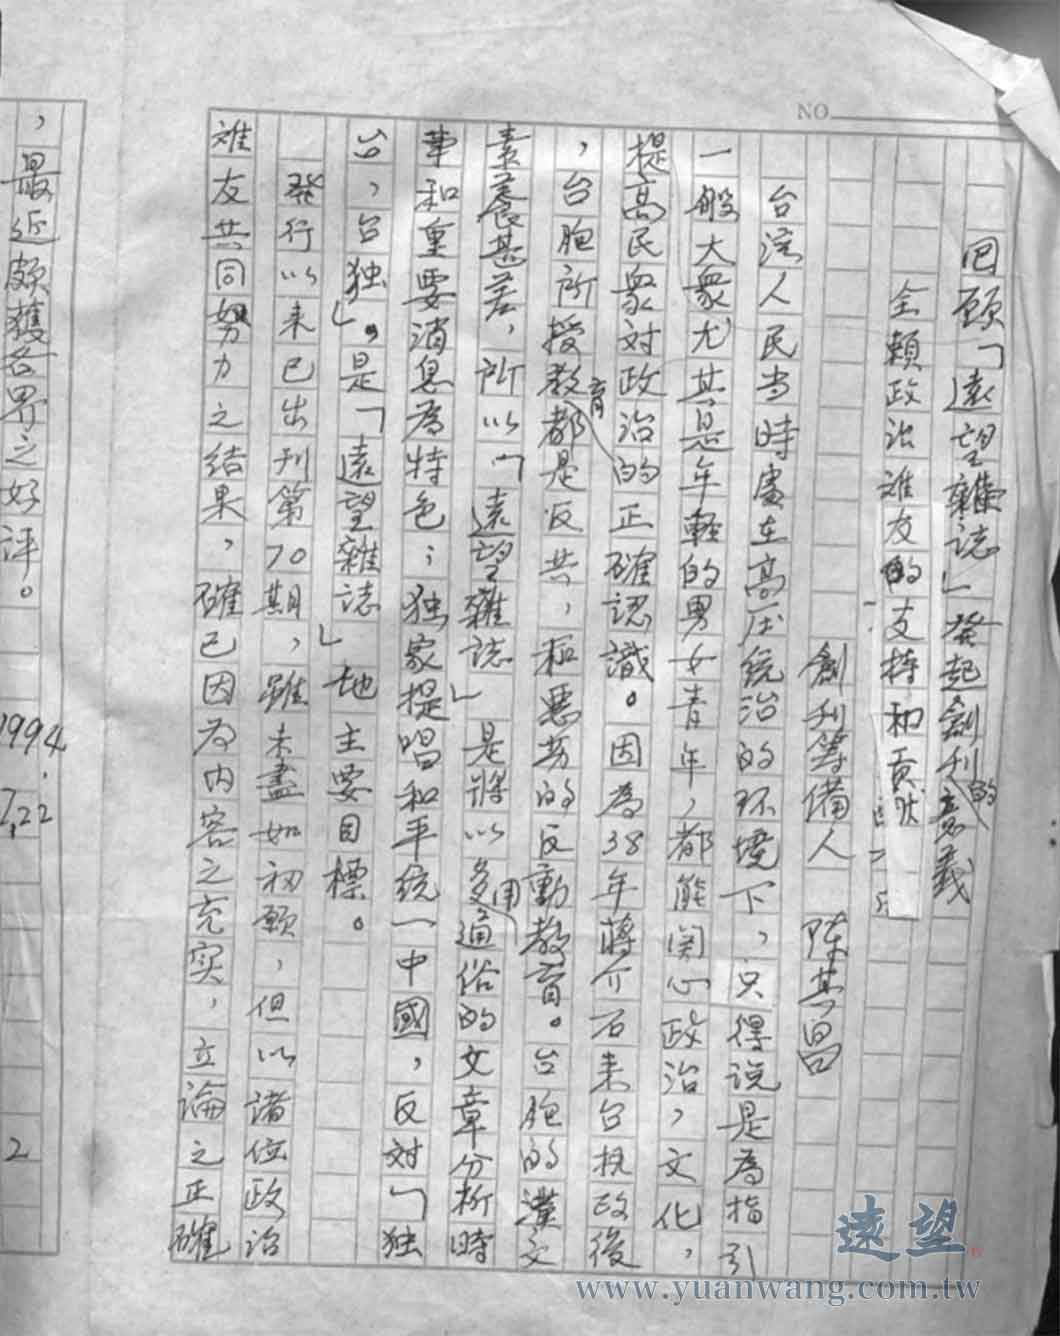 創刊籌備人陳其昌先生於1994年〈回顧《遠望》雜誌發起創刊的意義〉之手稿